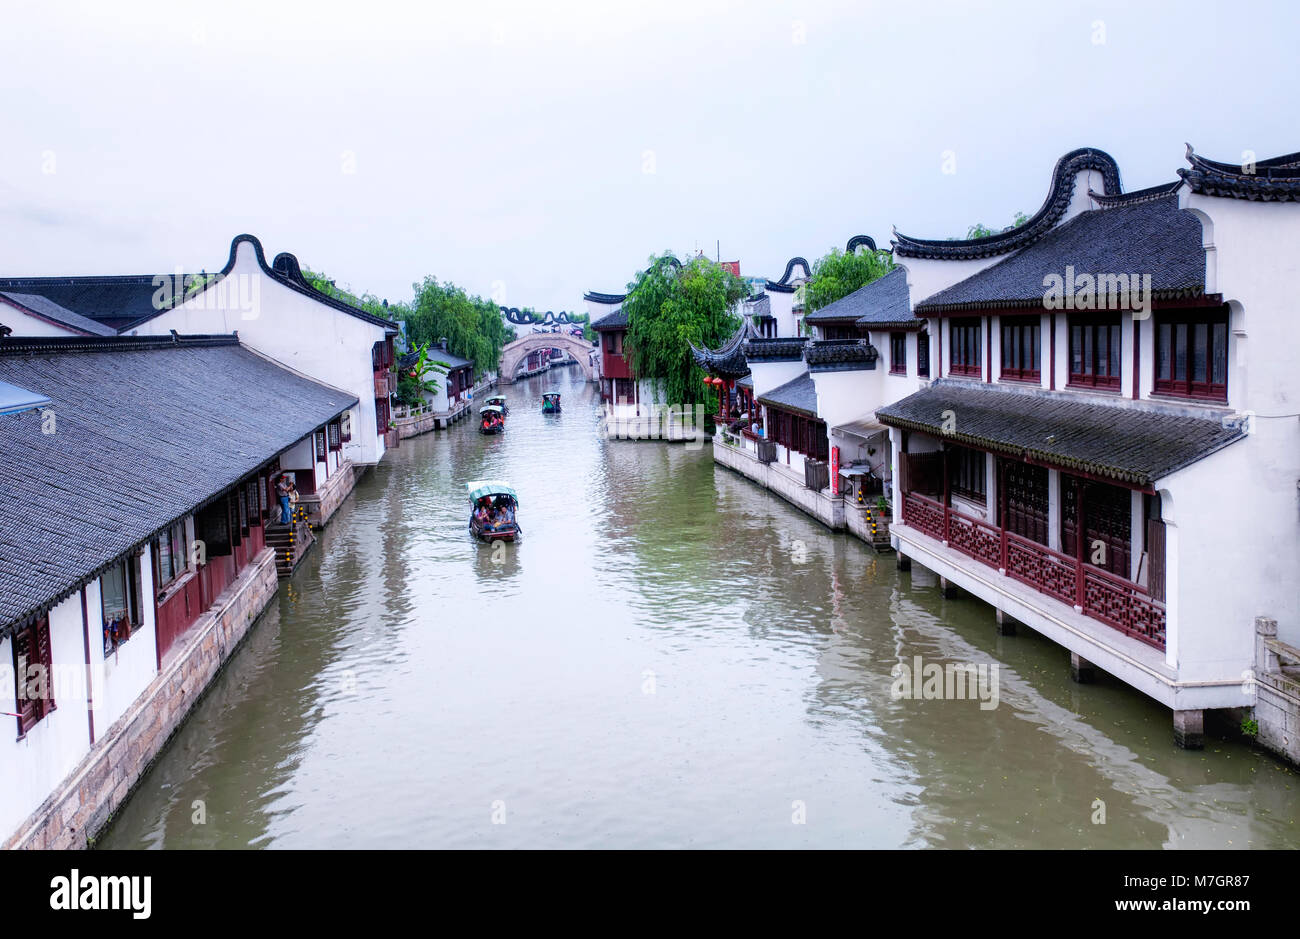 Le 5 juillet 2015. Shanghai, Chine. Les touristes chinois sur les nombreux ponts et bateaux sur l'eau de canaux Zhaojialou ville de Shanghai Chine entouré par Banque D'Images